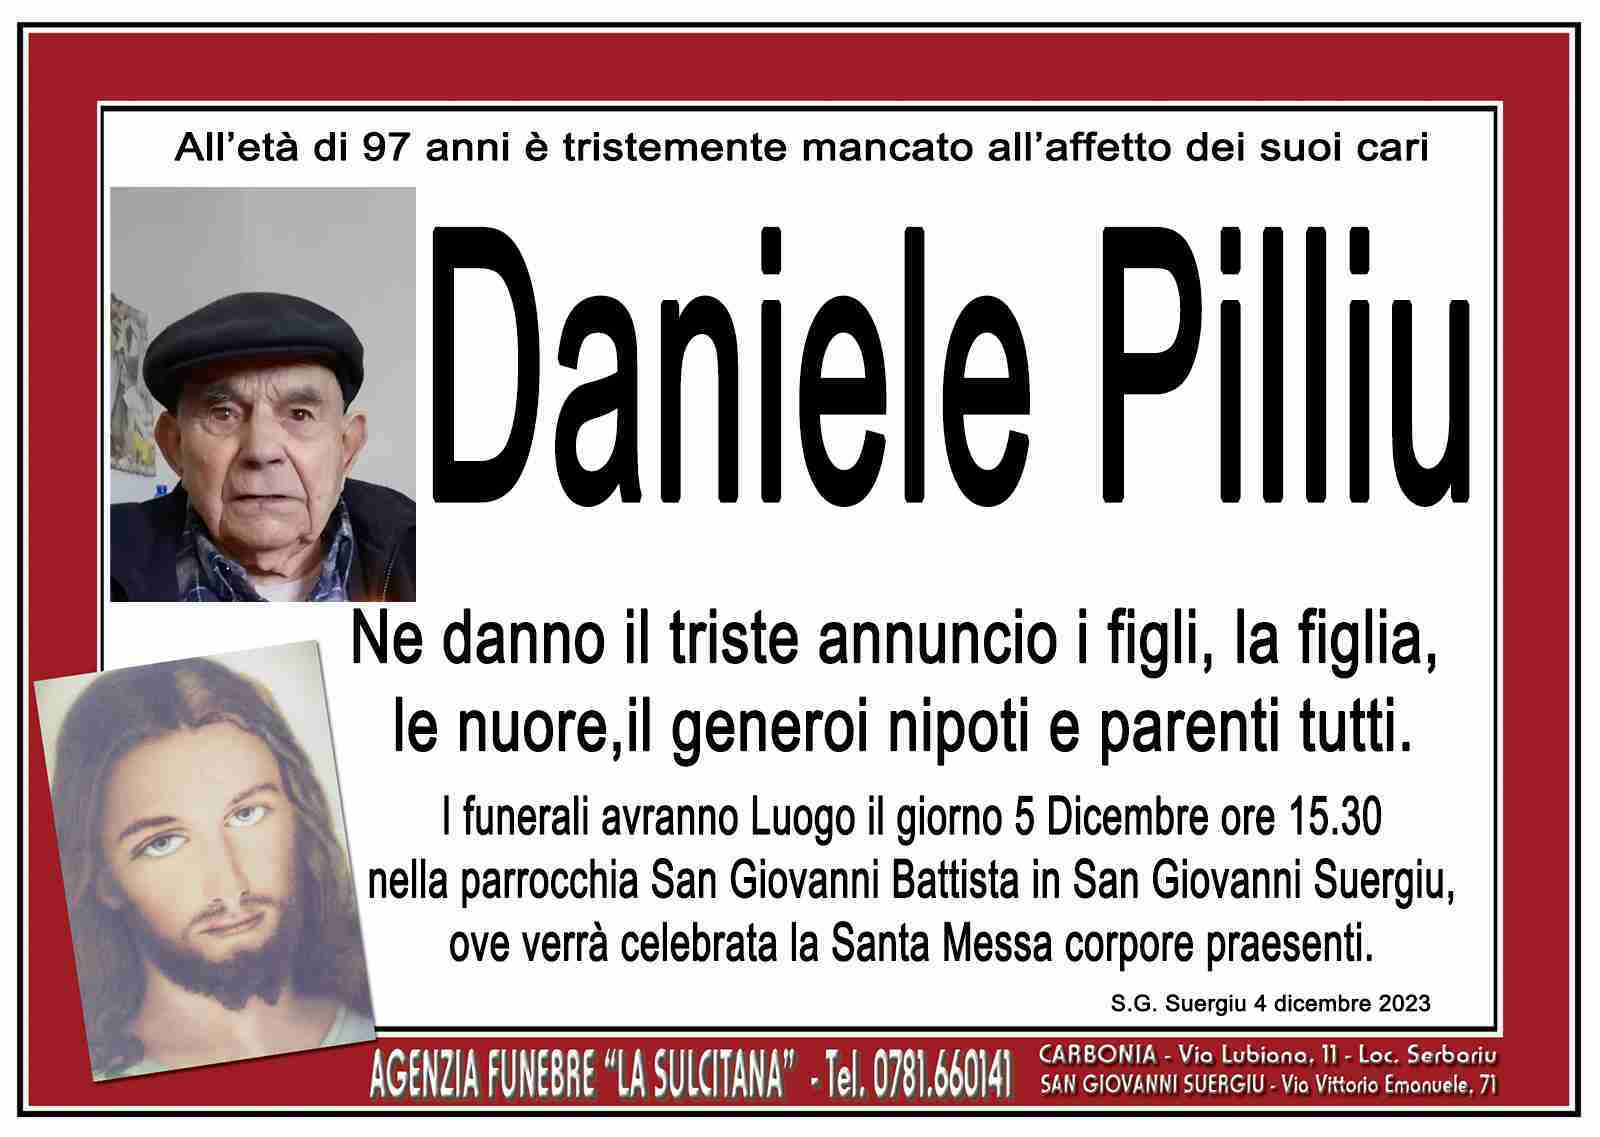 Daniele Pilliu